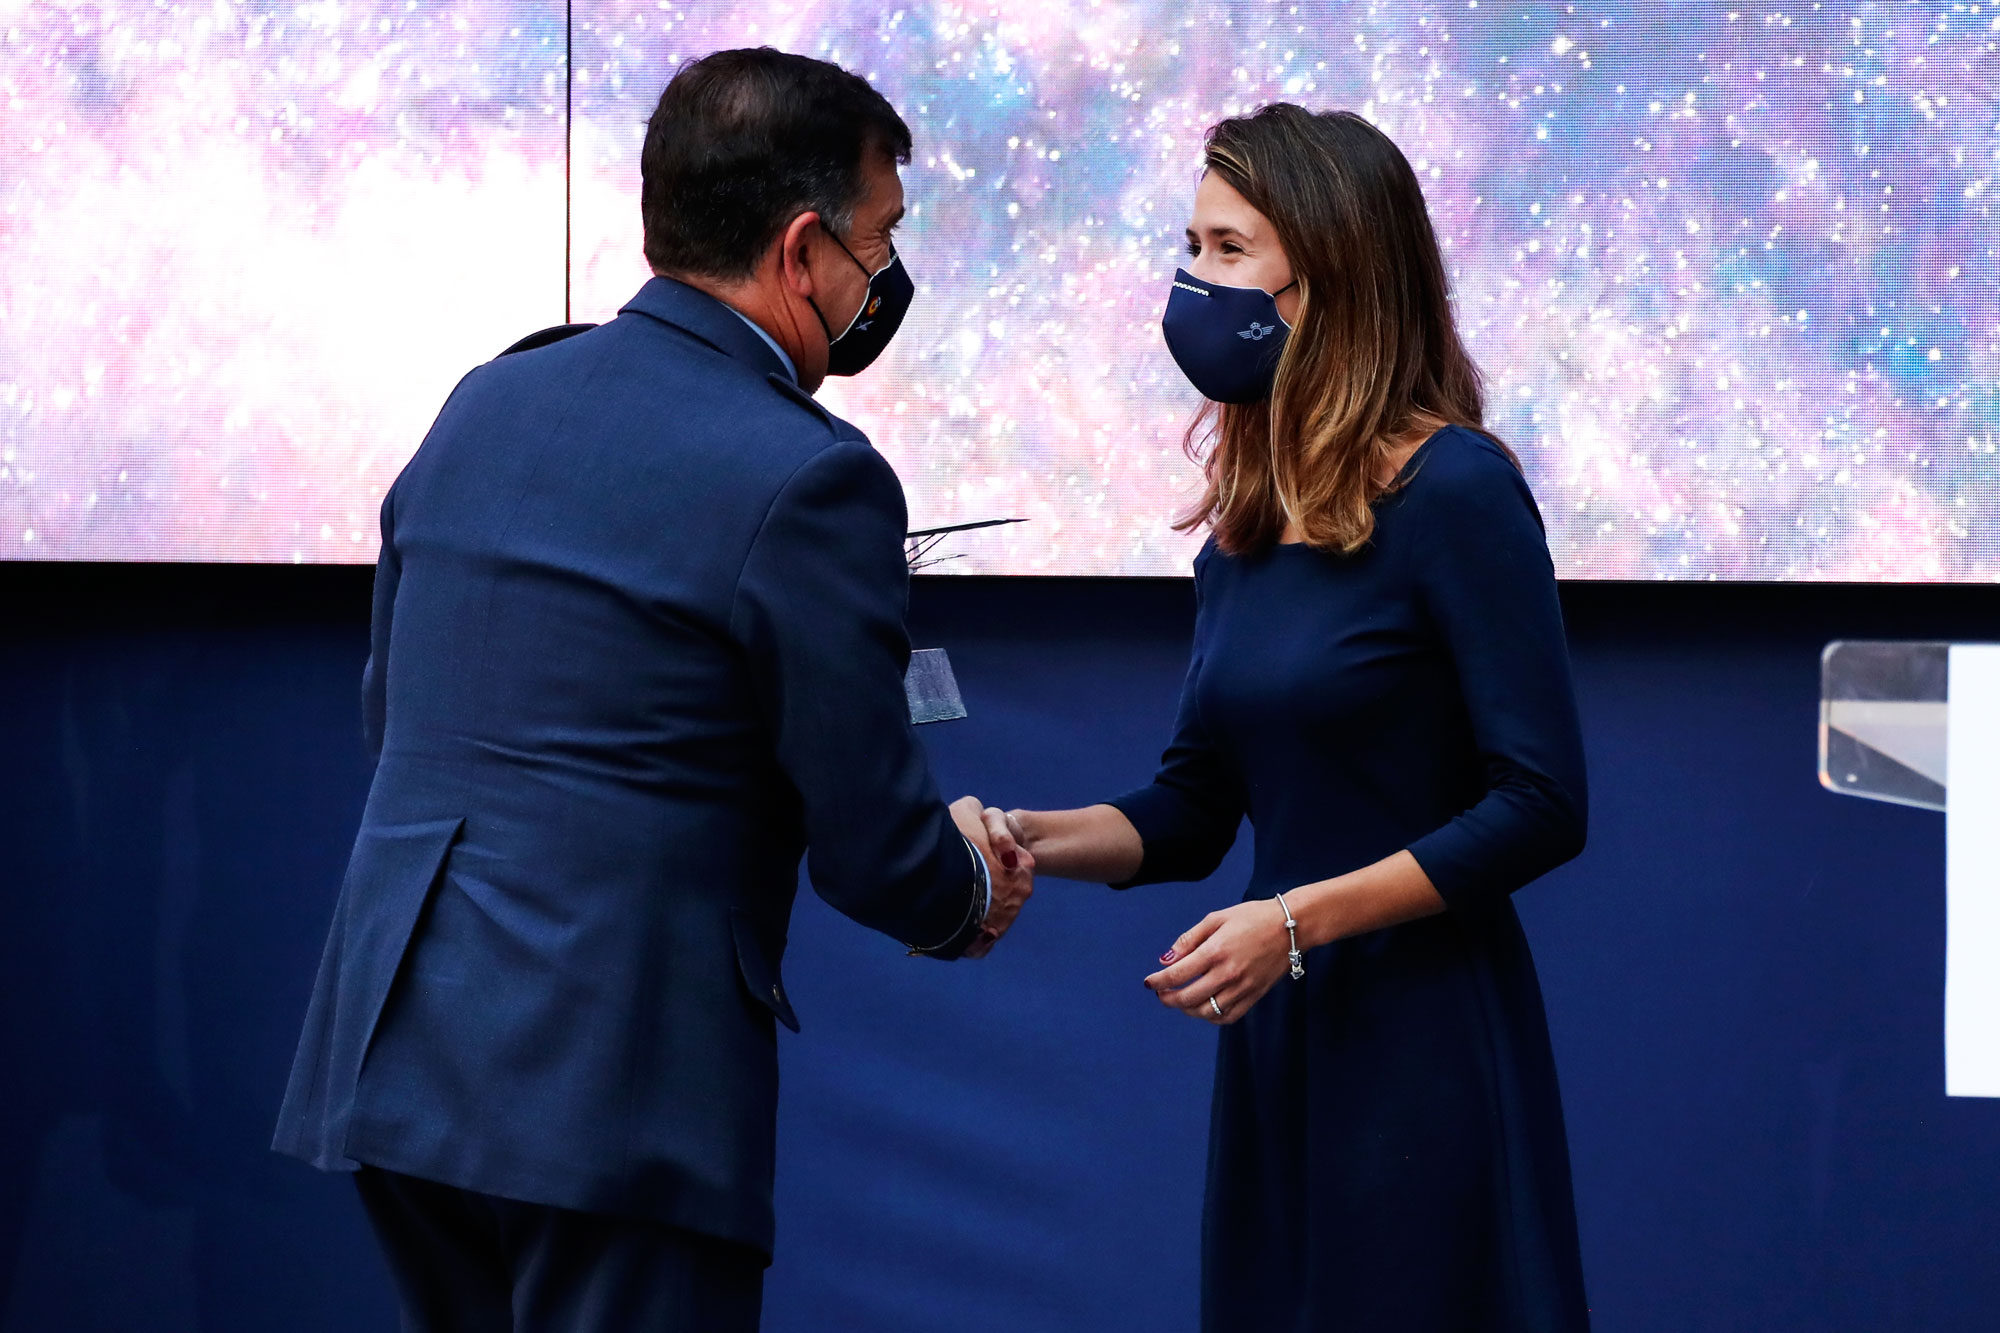 Premio de investigación e innovación aeroespacial BACSI para María de las Nieves Muñoz Fernández